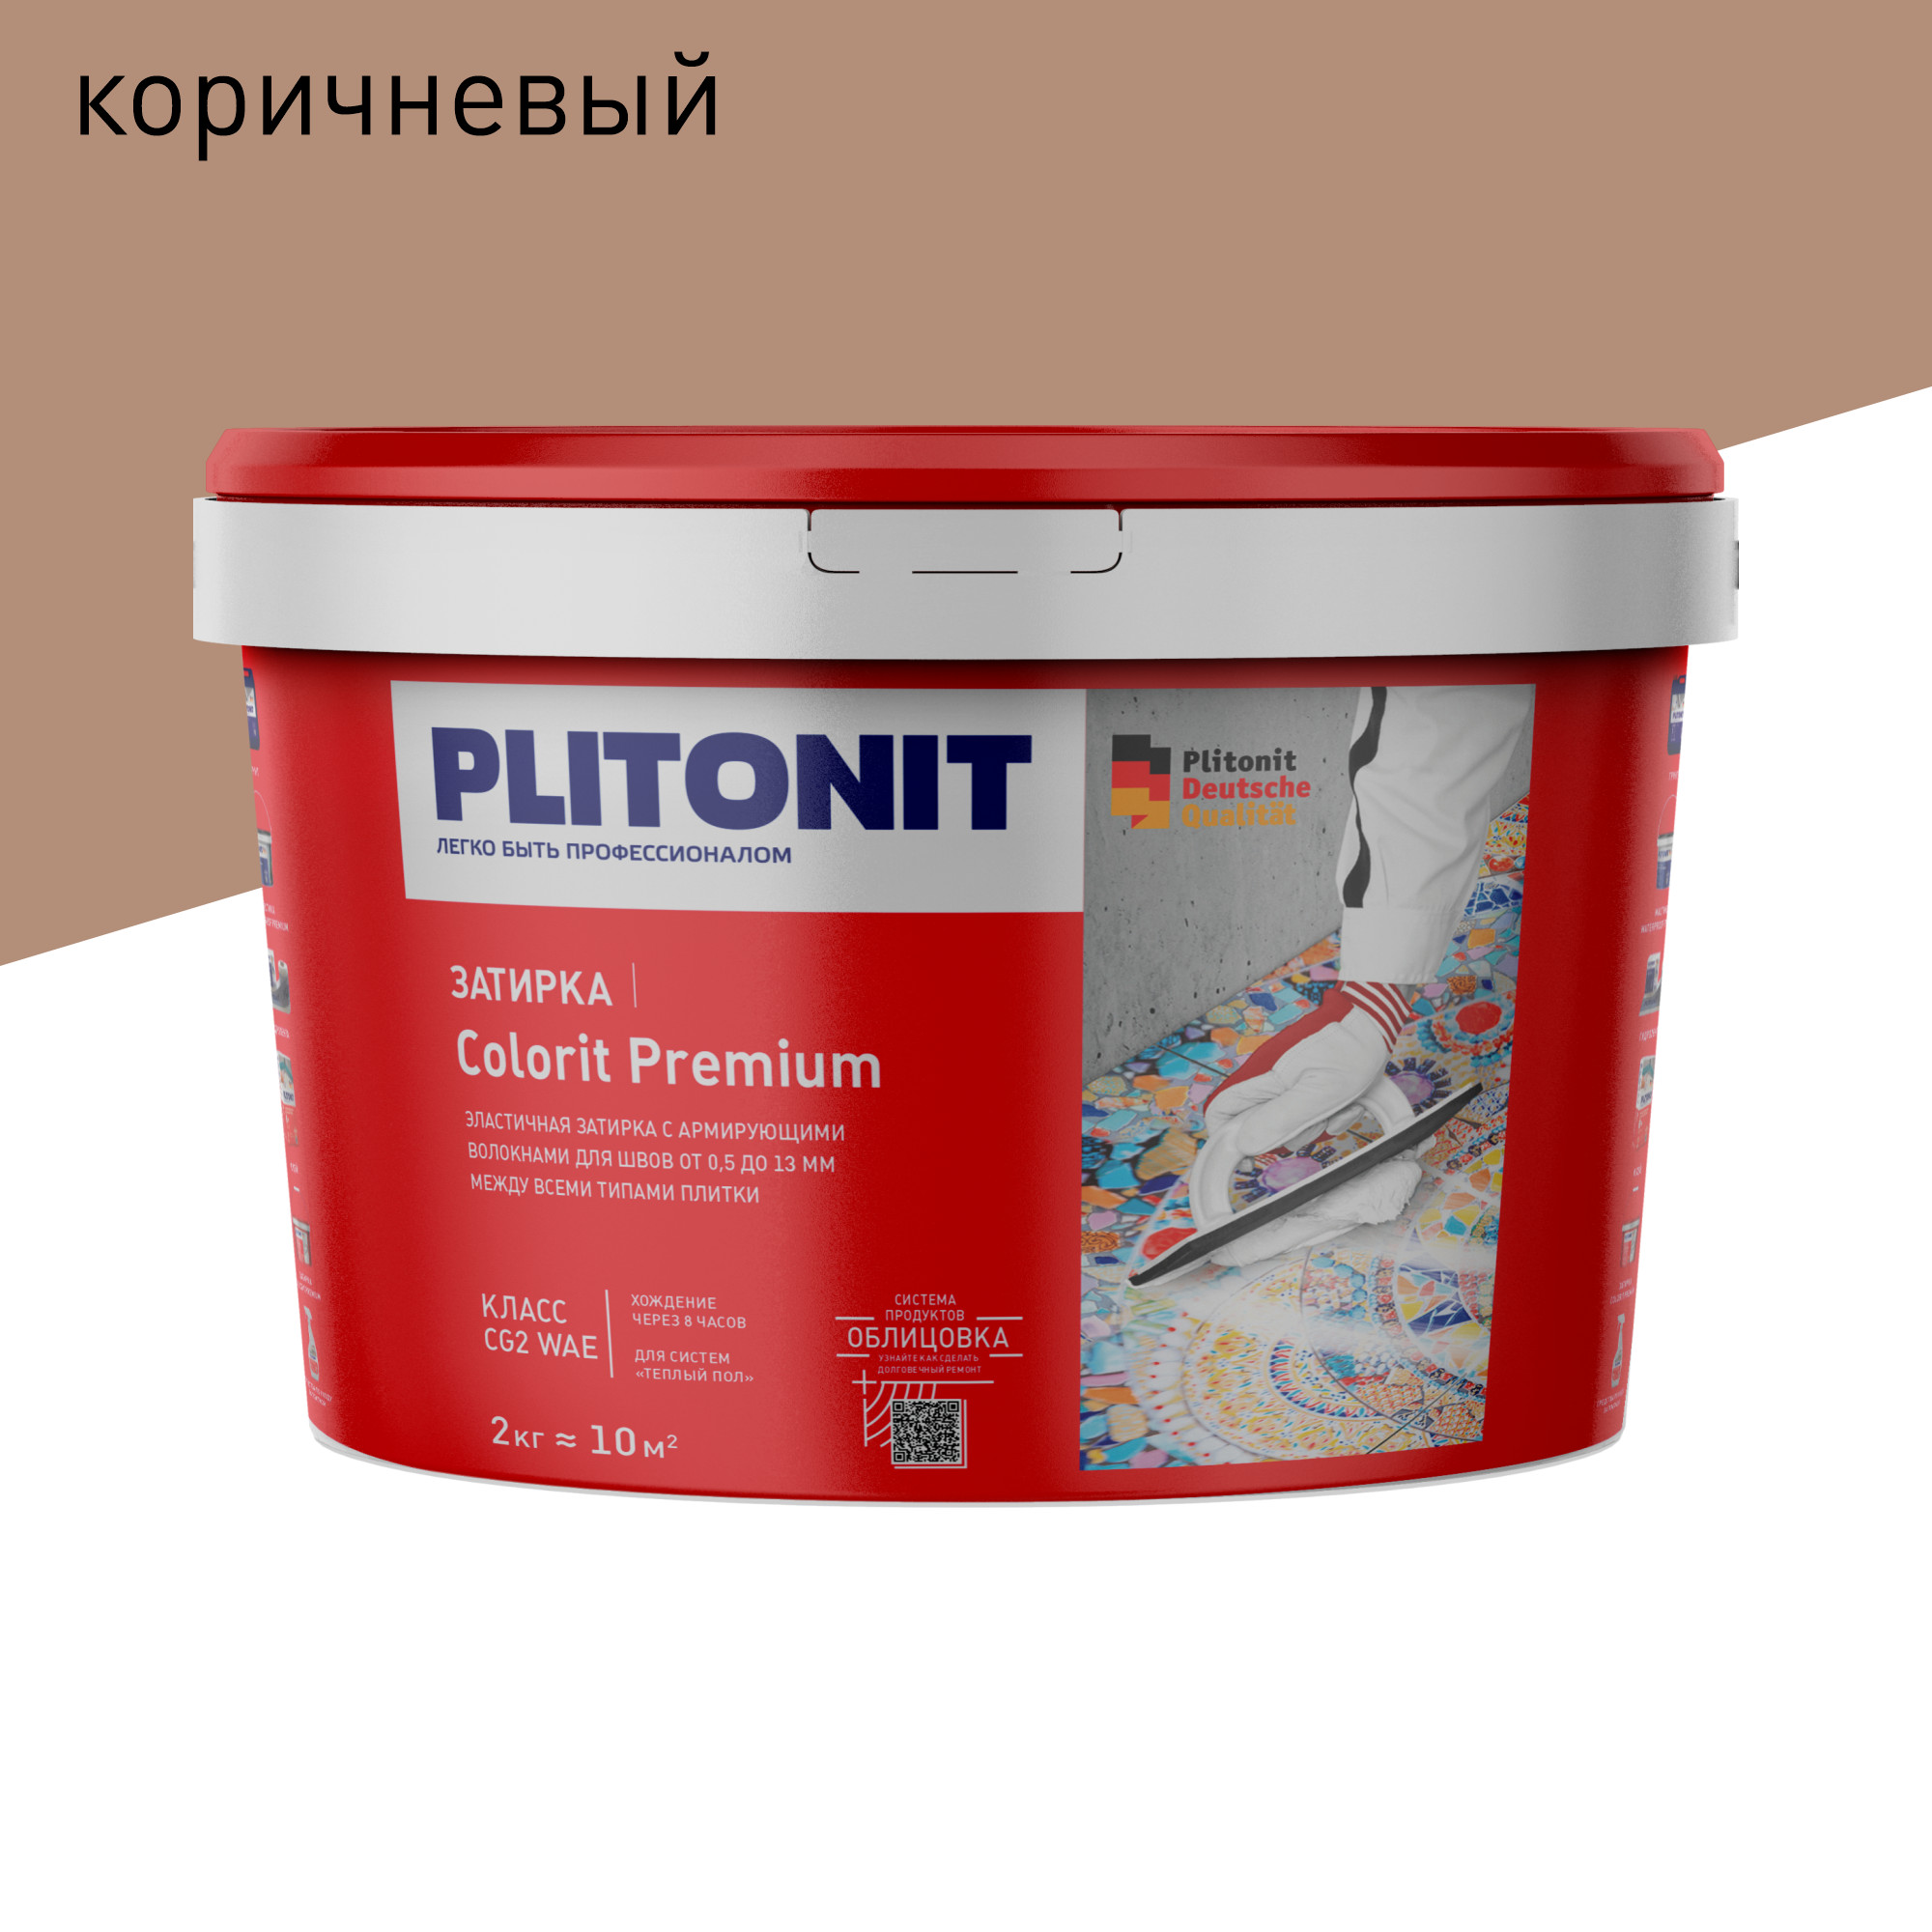 Затирка PLITONIT Colorit Premium коричневая 2 кг затирка эпоксидная plitonit colorit fast premium звездная пыль 2 кг